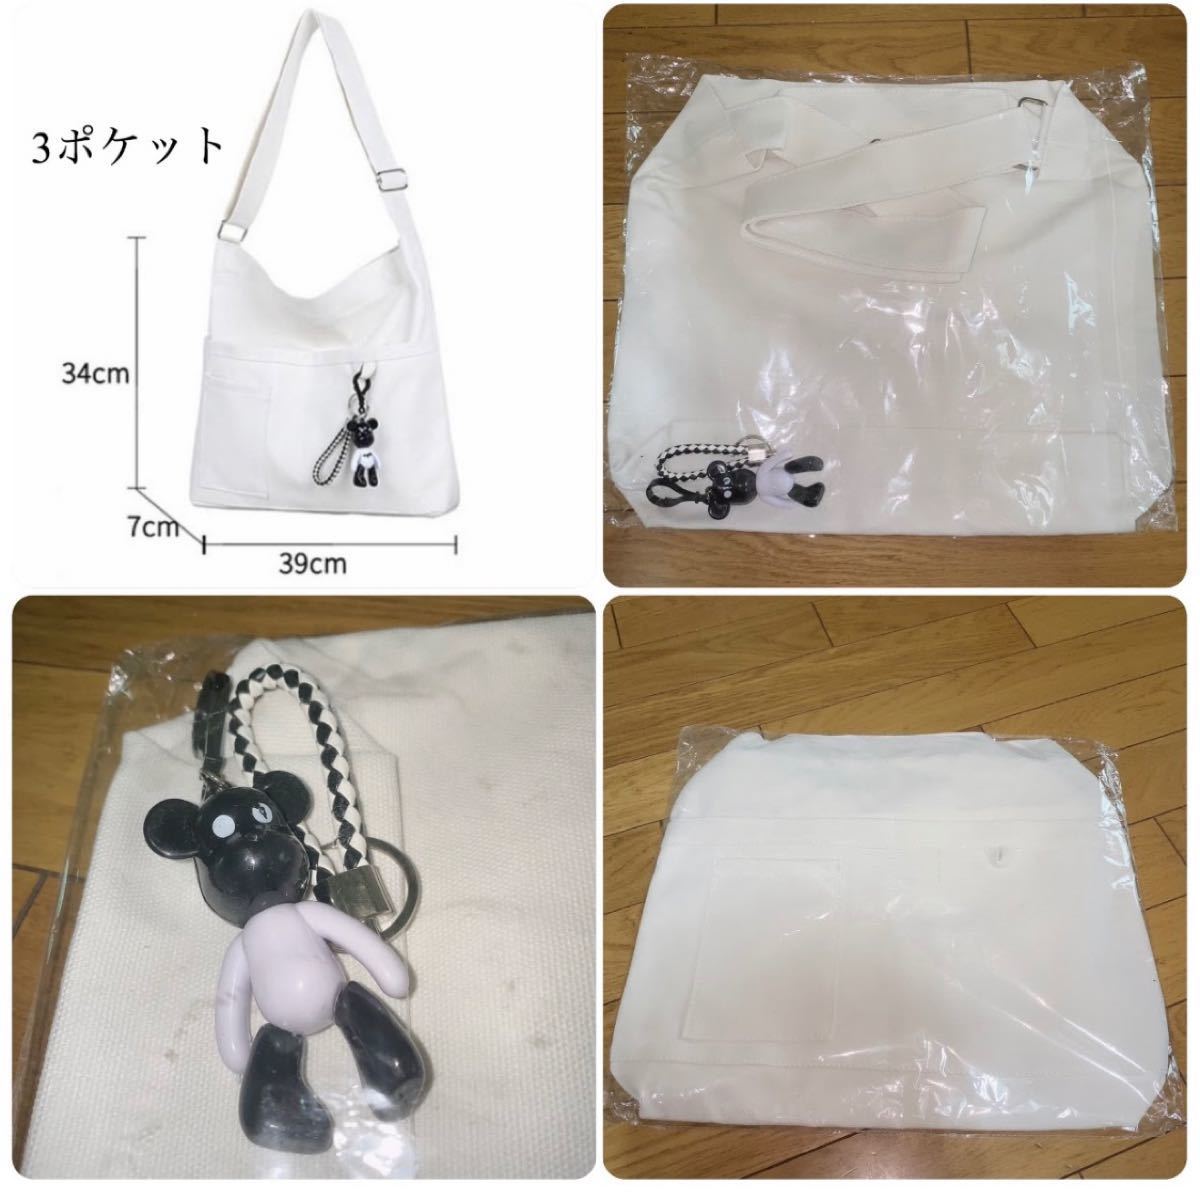 トートバッグ ショルダーバッグ ボディバッグ キャンパスバッグ 韓国ファッション 帆布 大容量 白 韓国雑貨 男女兼用 新品未使用